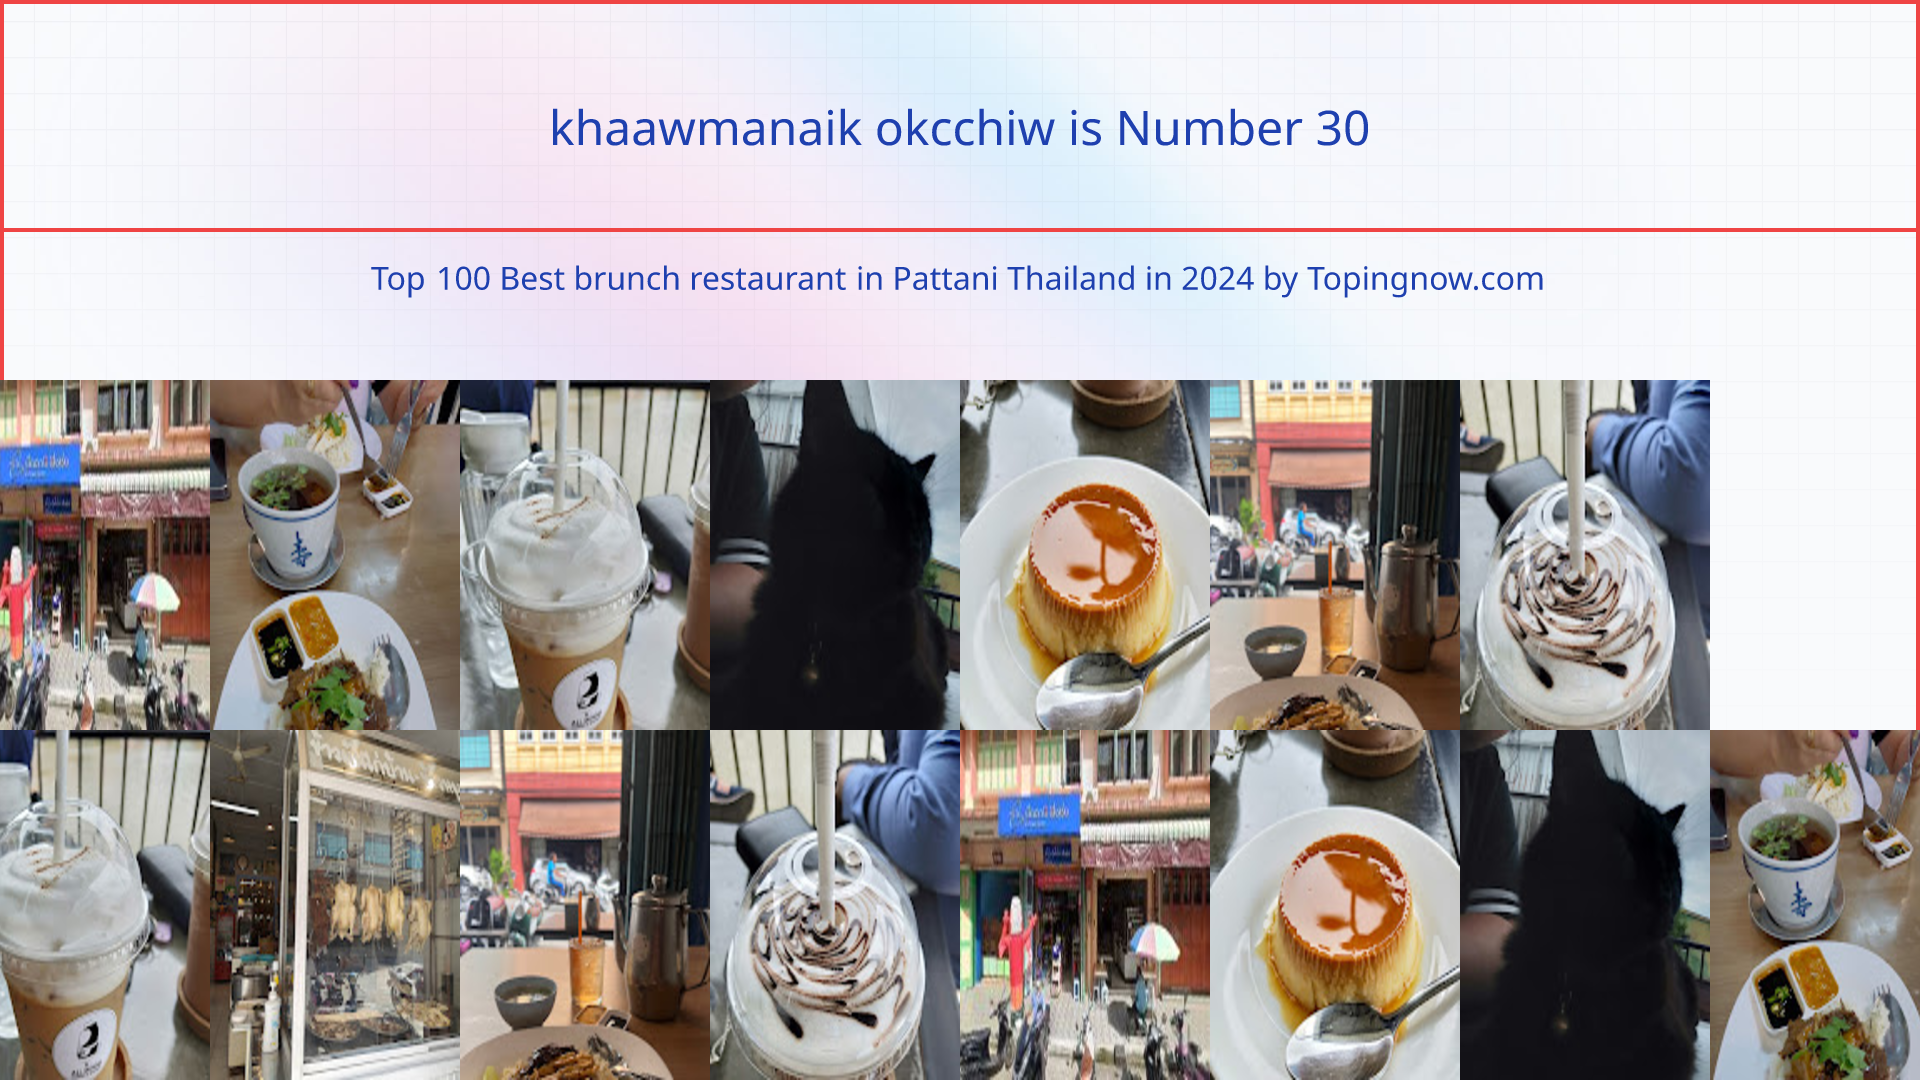 khaawmanaik okcchiw: Top 100 Best brunch restaurant in Pattani Thailand in 2024